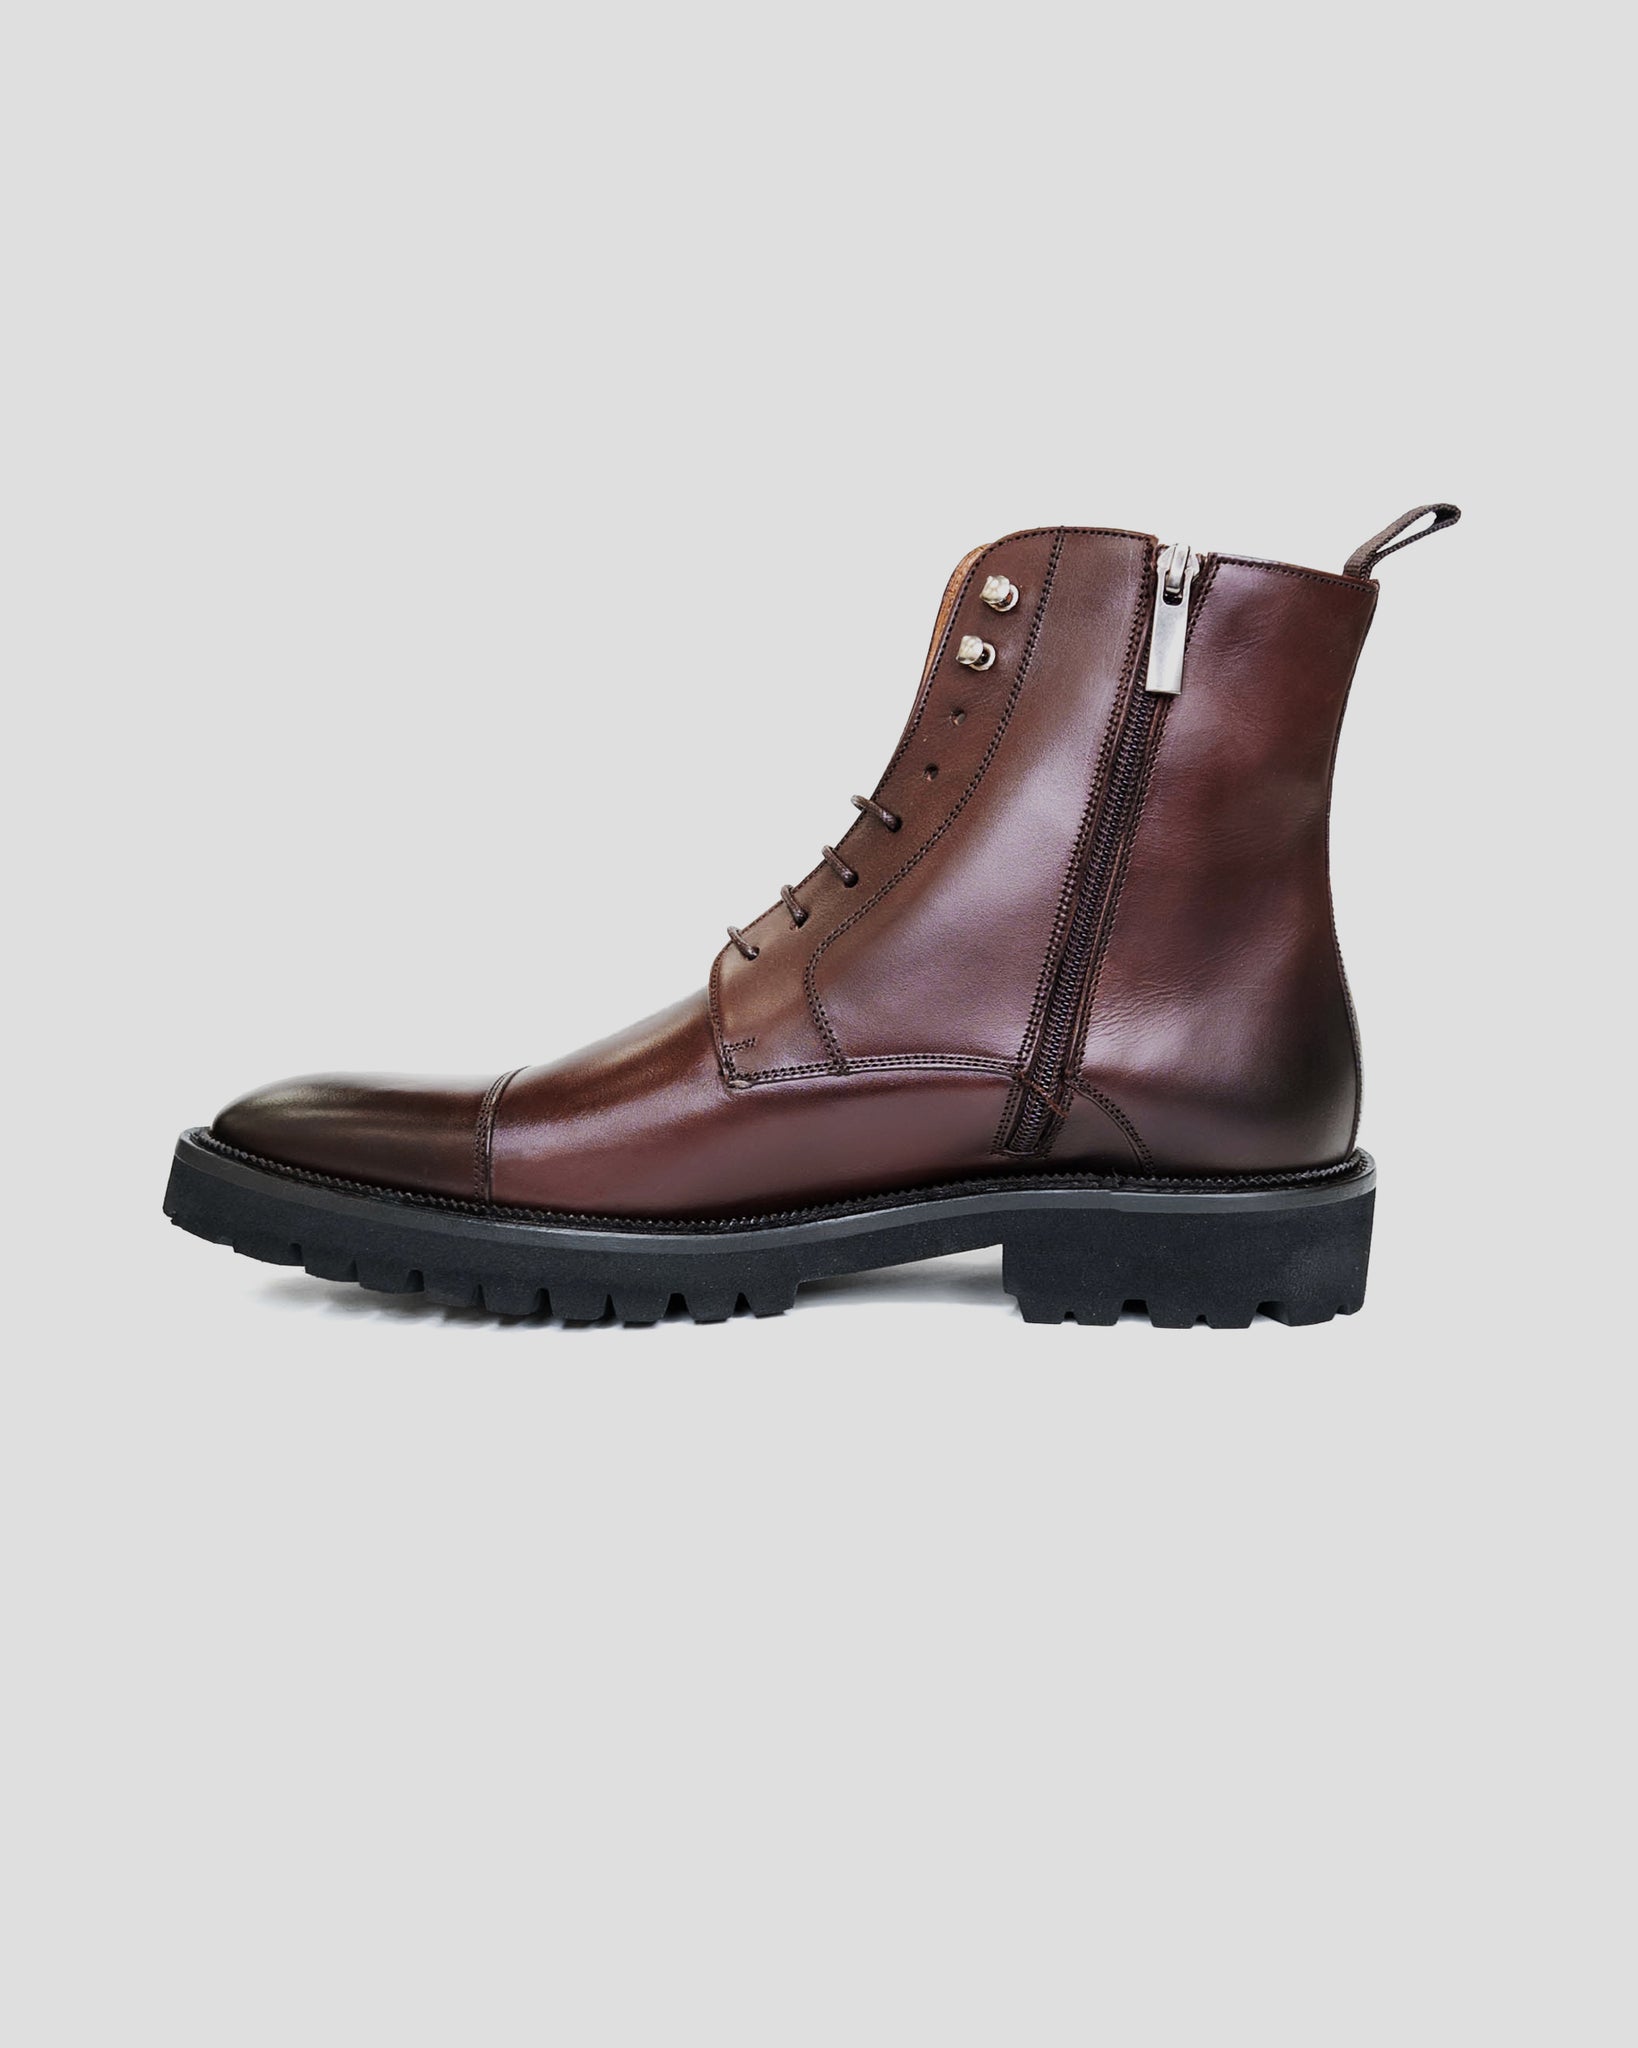 Preston Dress Boots – Dark Brown